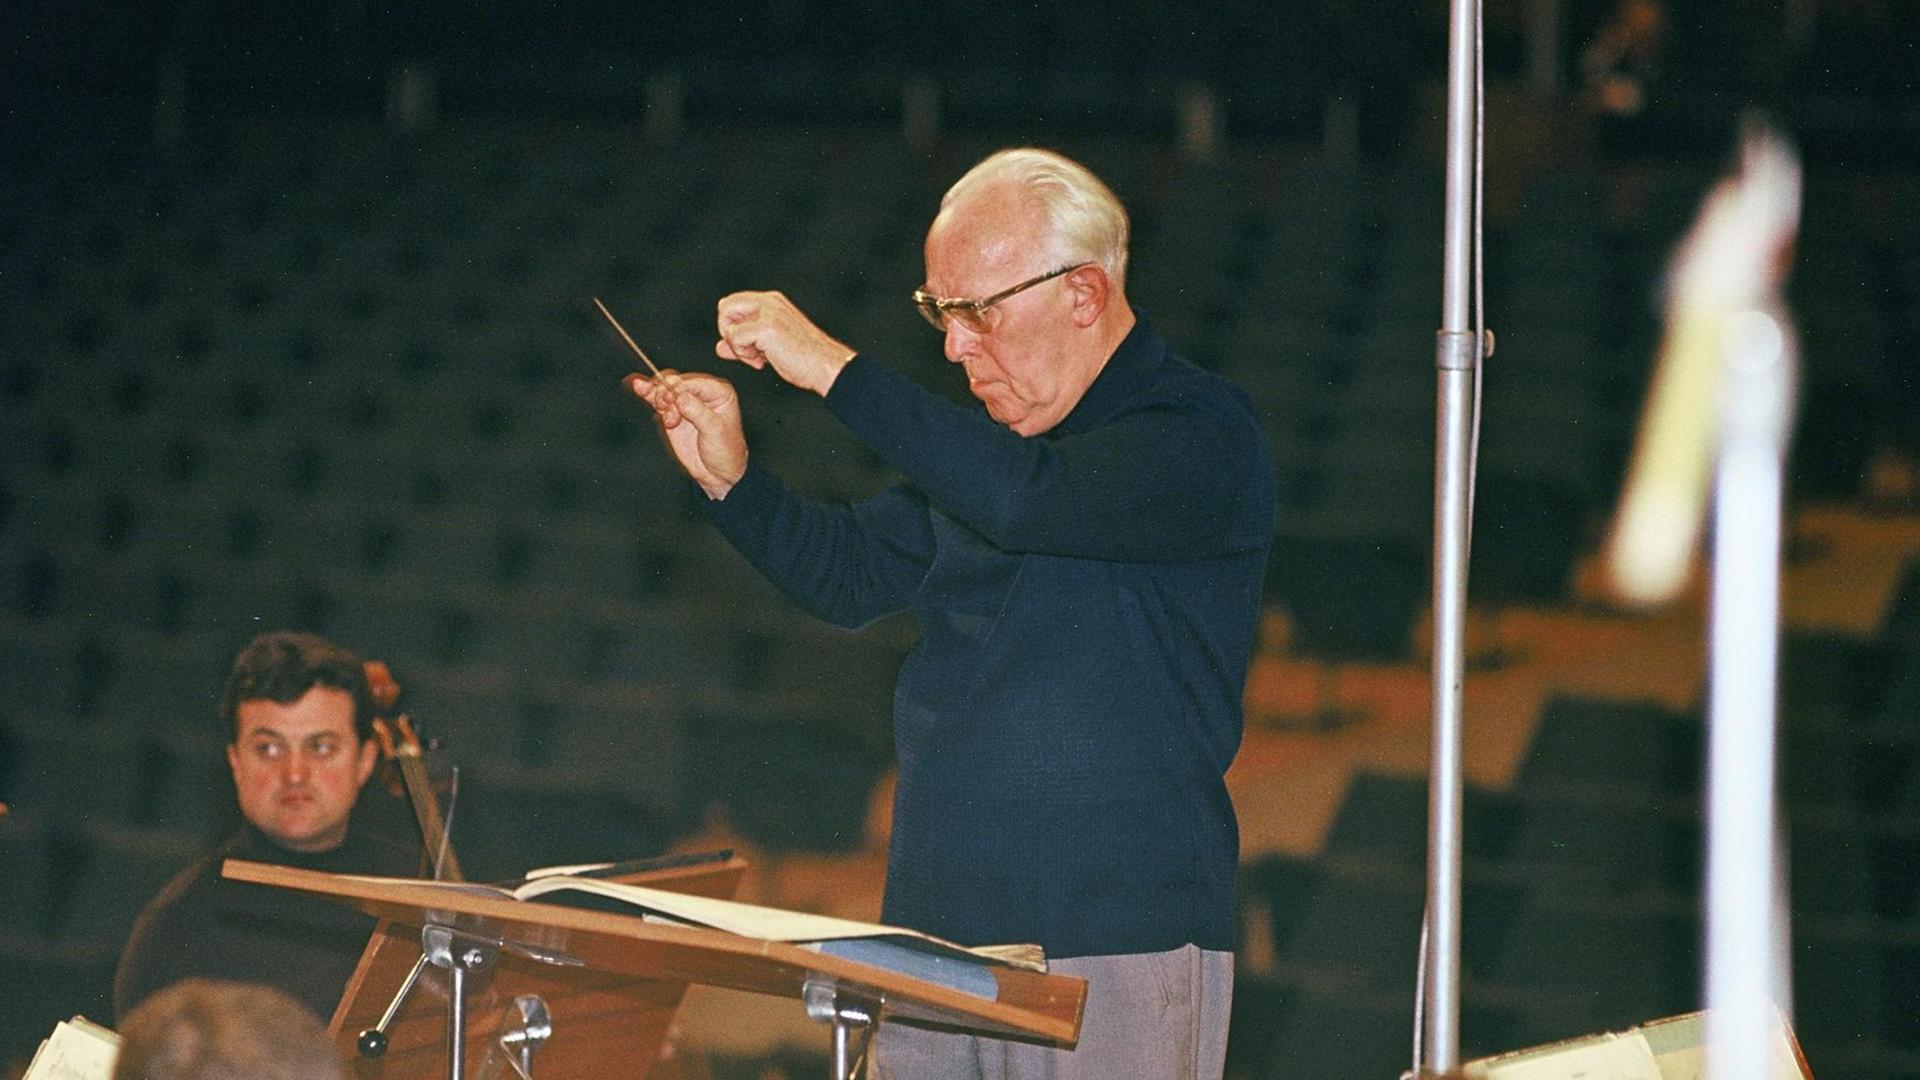 Der Dirigent Heinz Bongartz dirigiert eine Probe, er trägt eine helle Hose und einen blauen Rollkragenpullover, in der rechten Hand hält er einen kleinen Taktstock